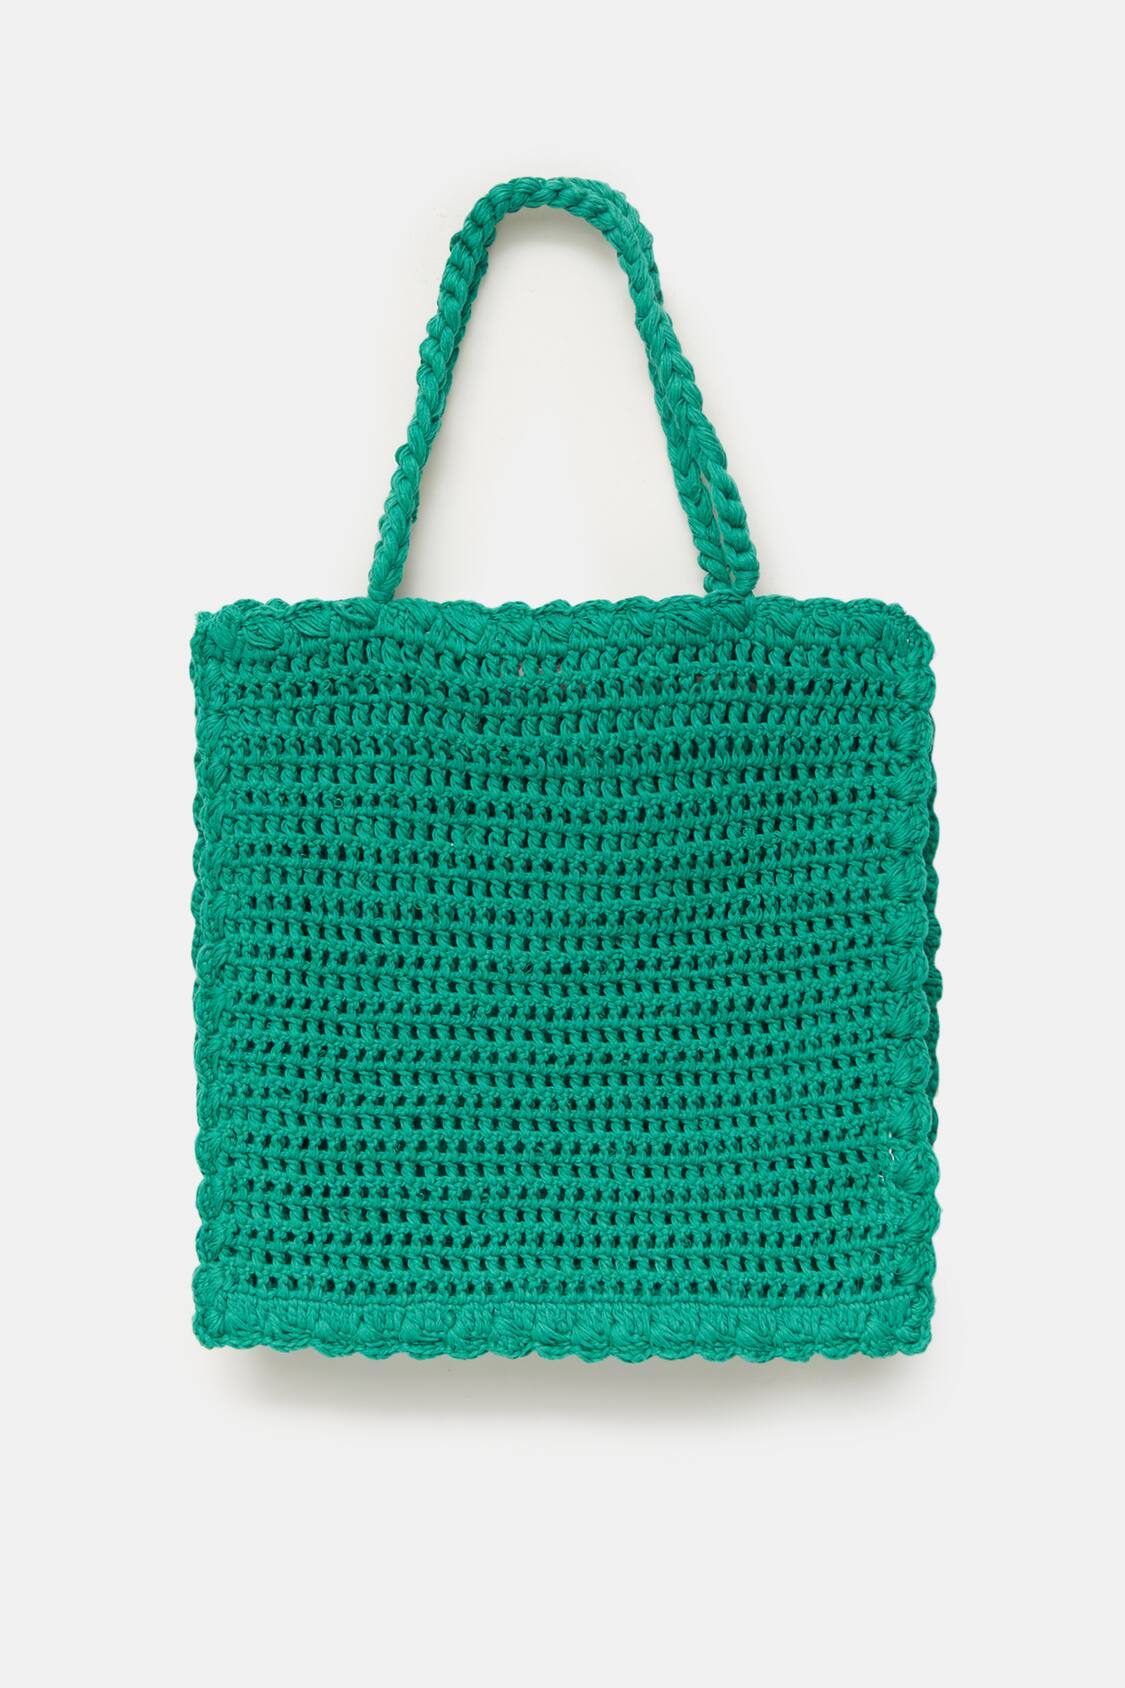 Pull&Bear Women's' Green Crochet Bag